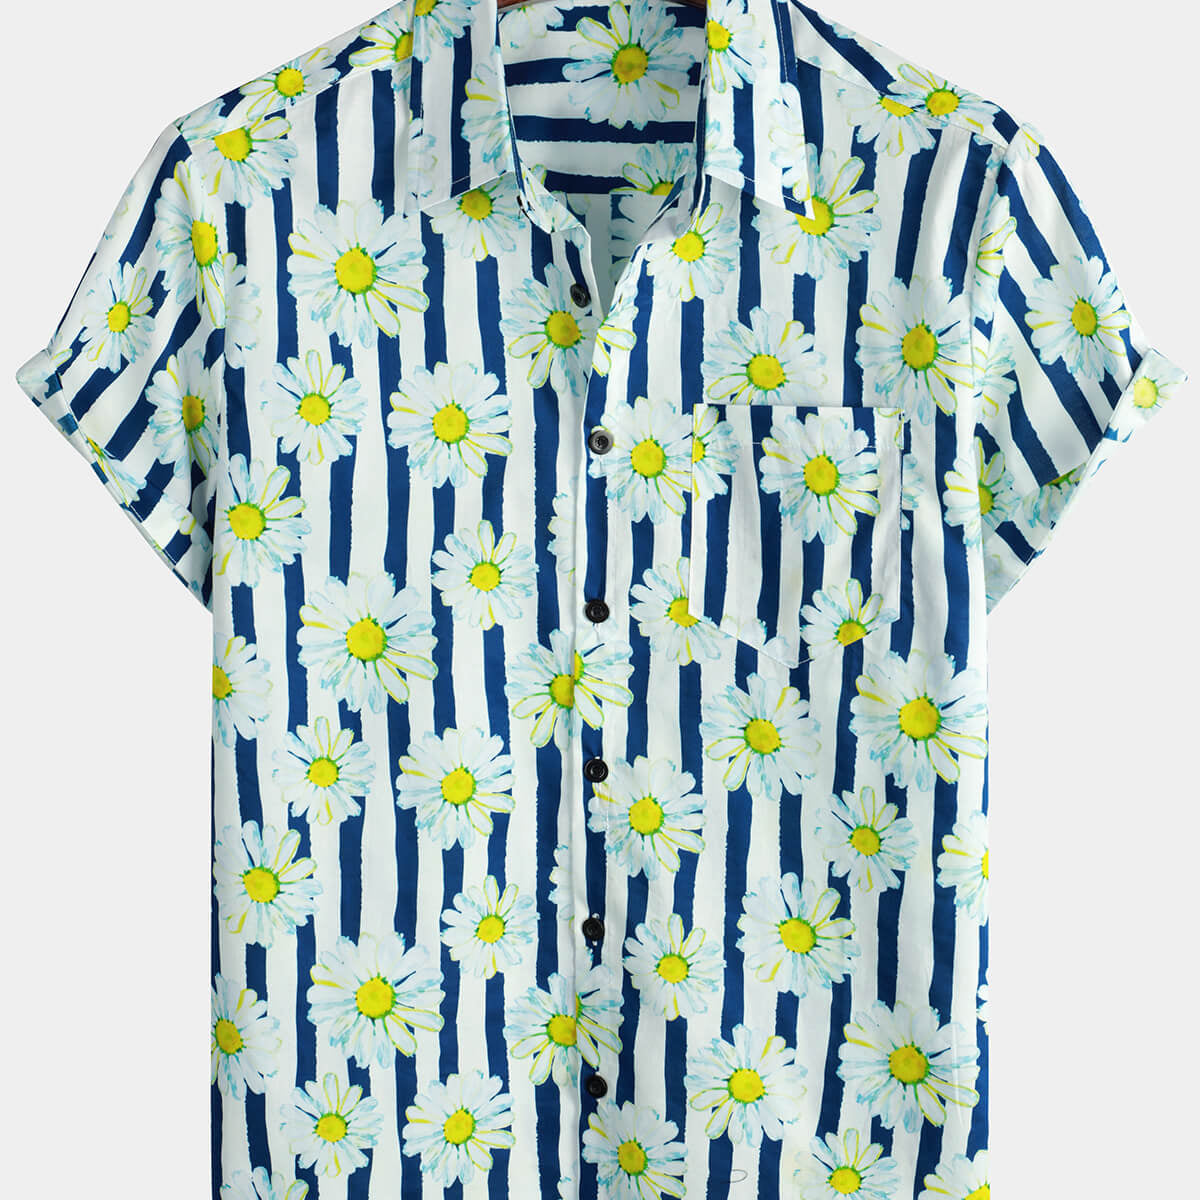 Chemise boutonnée d'été à manches courtes en coton à rayures bleues pour hommes